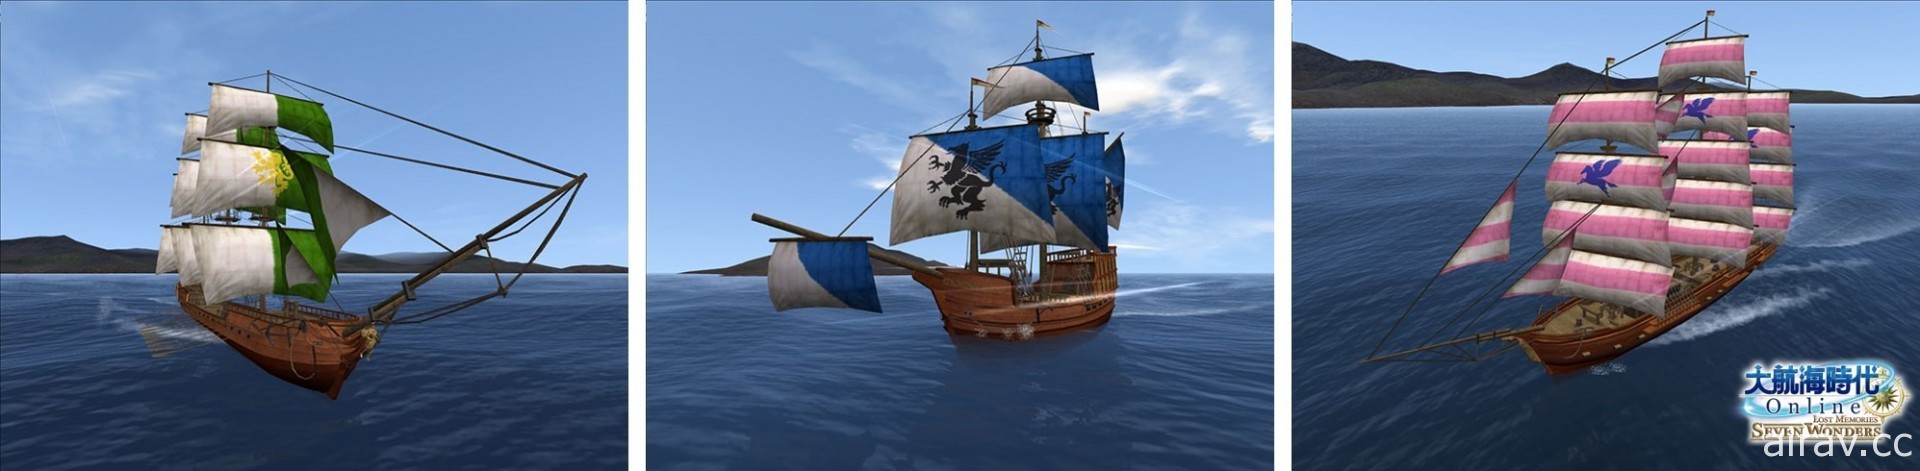 《大航海時代 Online》推出新內容「遺產之章」 探索「羅得島＆以弗所」新海域